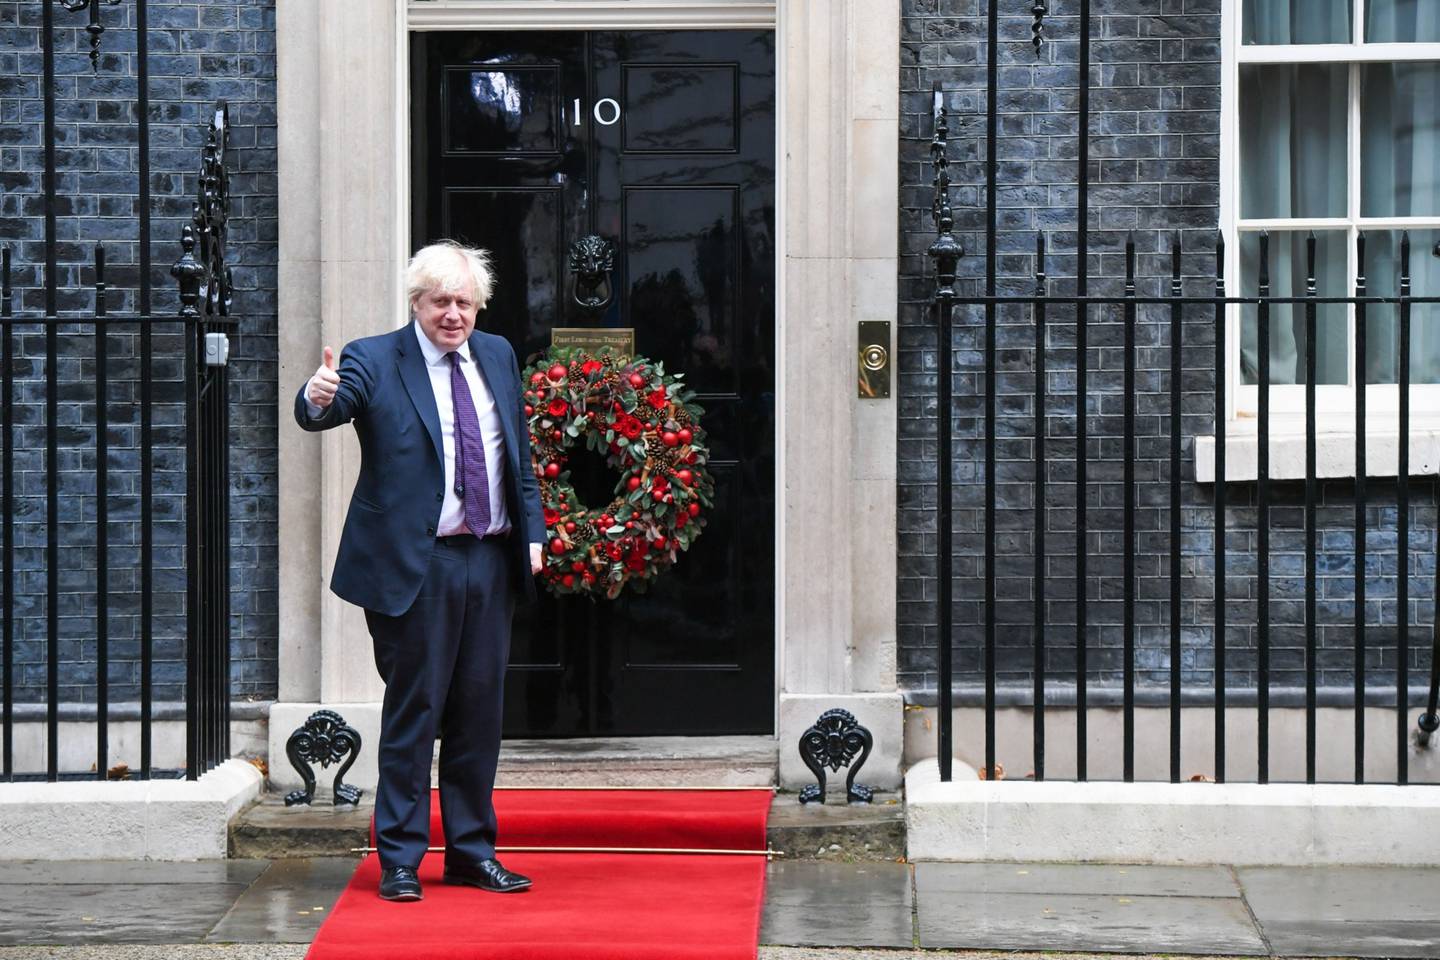 Boris Johnson, primer ministro del Reino Unido, se prepara para saludar a Hassanal Bolkiah, sultán de Brunei, en el número 10 de Downing Street en Londres, Reino Unido, el viernes 3 de diciembre de 2021. Fotógrafo: Chris J. Ratcliffe/Bloomberg